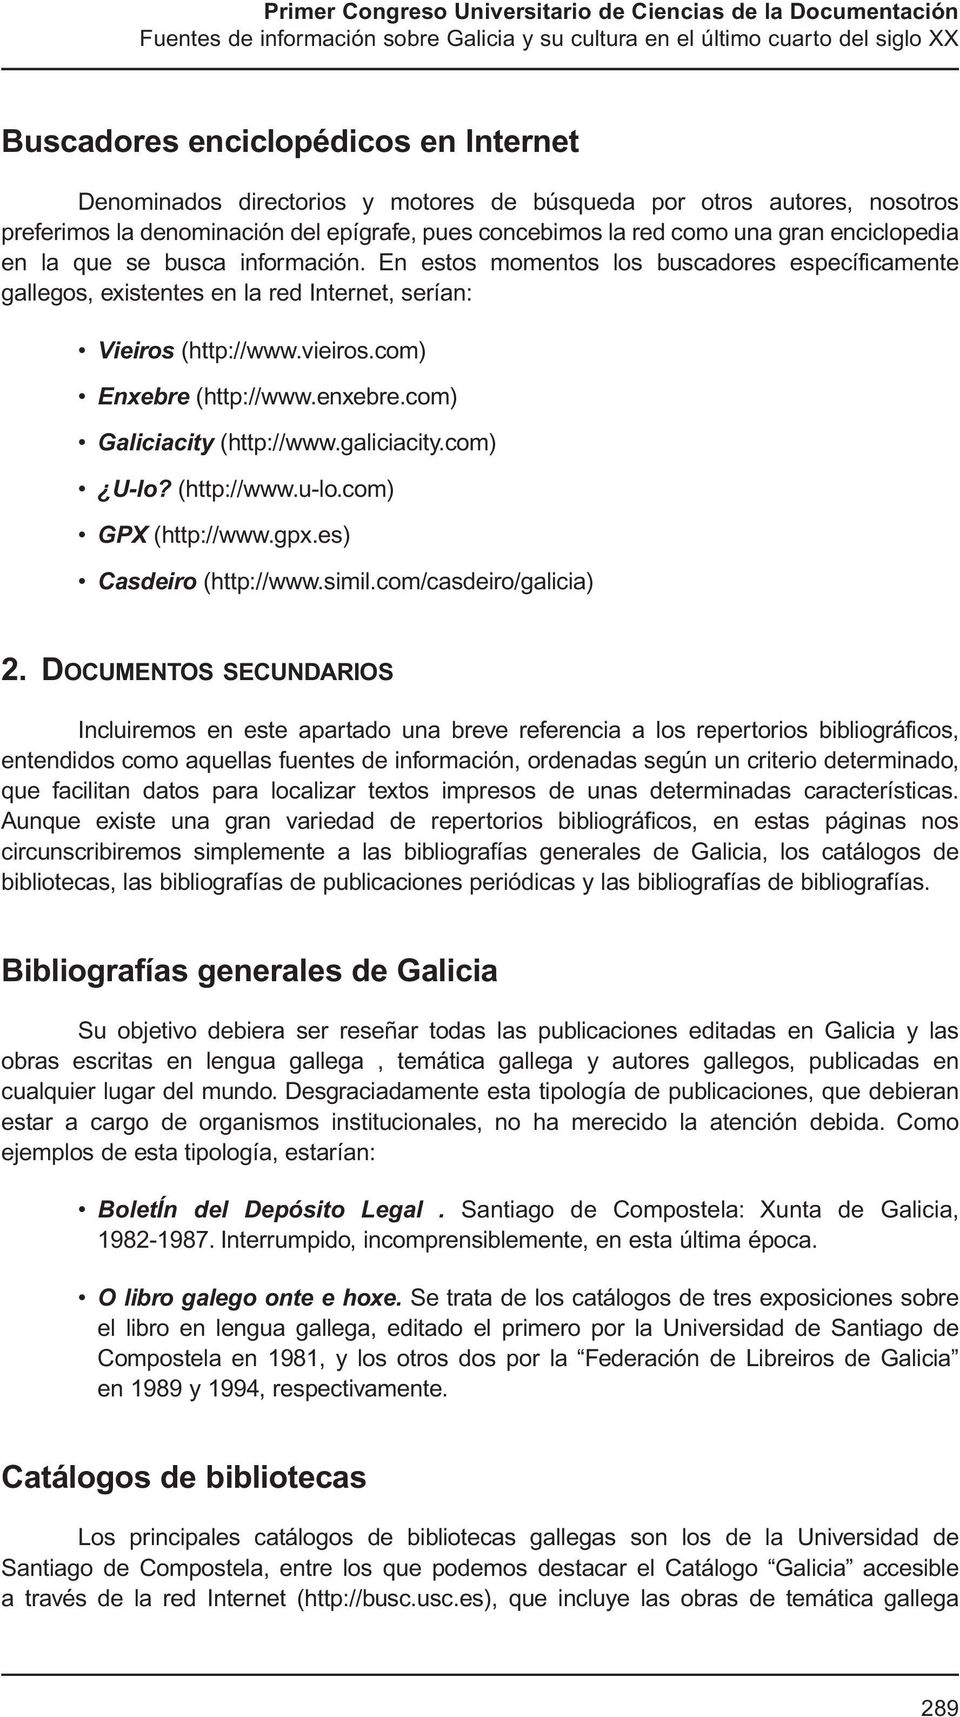 enxebre.com) Galiciacity (http://www.galiciacity.com) U-lo? (http://www.u-lo.com) GPX (http://www.gpx.es) Casdeiro (http://www.simil.com/casdeiro/galicia) 2.